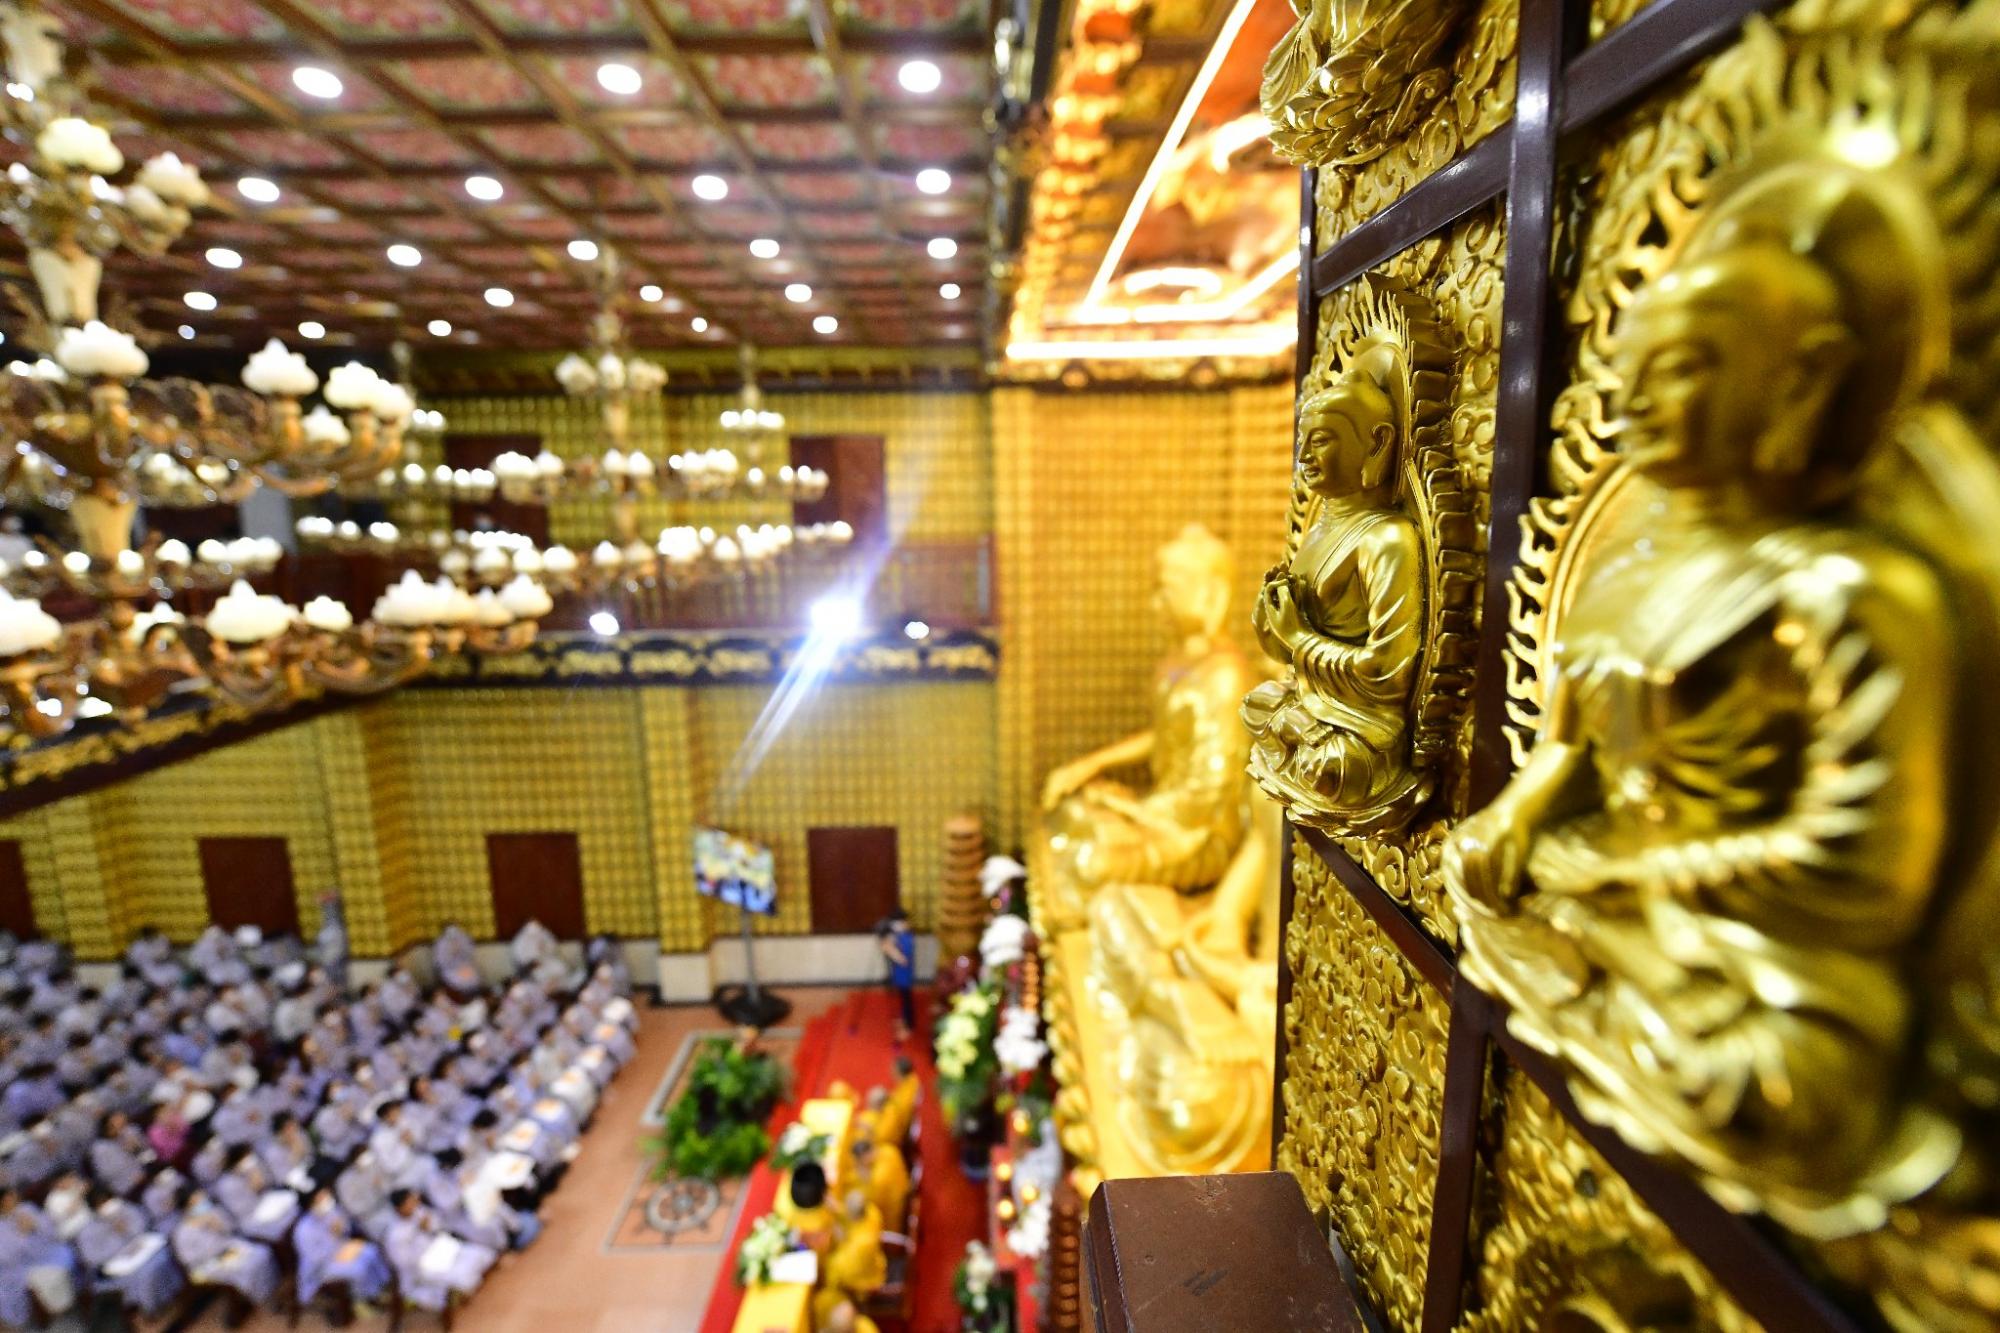 Hơn 500 hành giả sáng suốt chọn đức Phật làm bậc thầy tâm linh tại Chùa Giác Ngộ